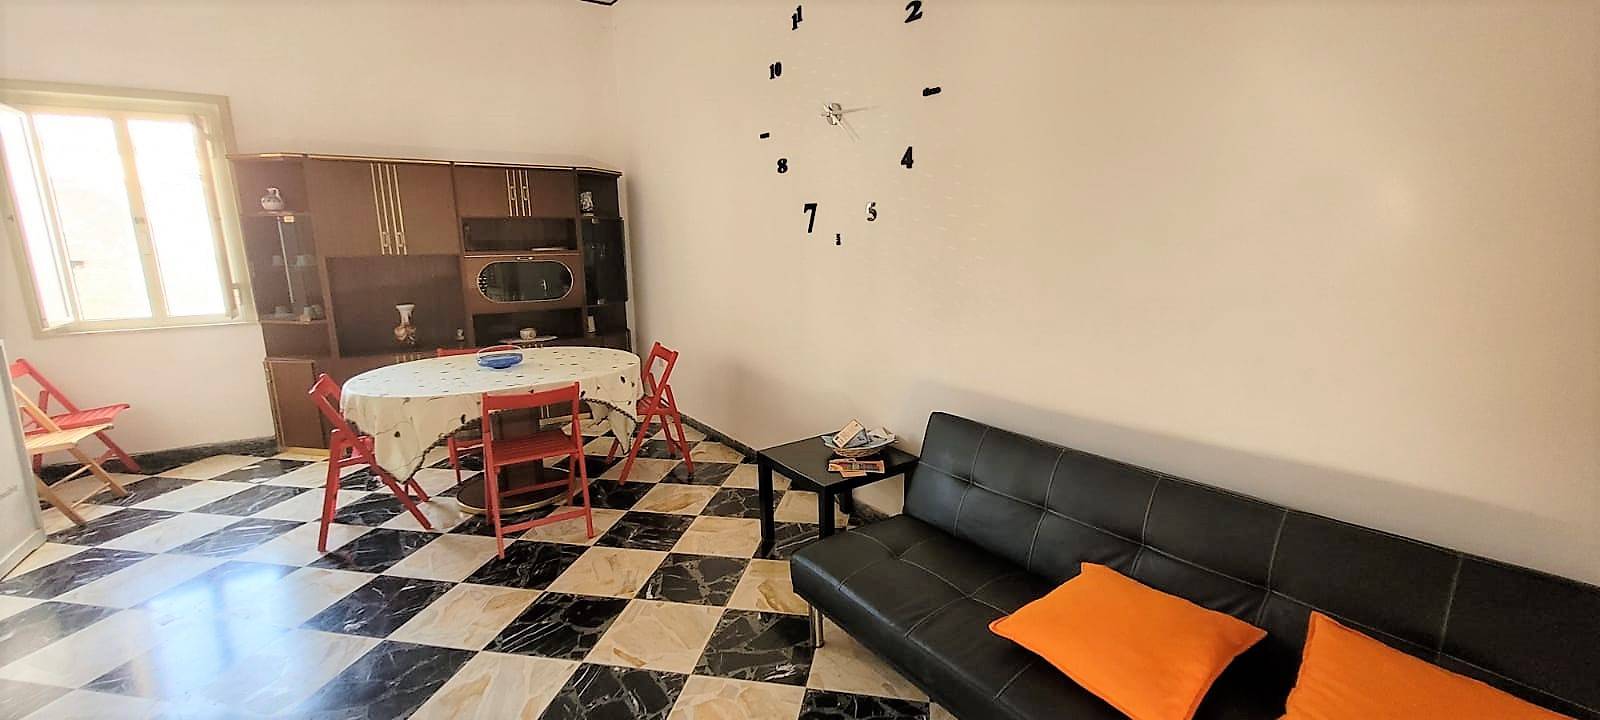 Appartamento in vendita a Avola, 4 locali, zona Località: CENTRO, prezzo € 65.000 | CambioCasa.it